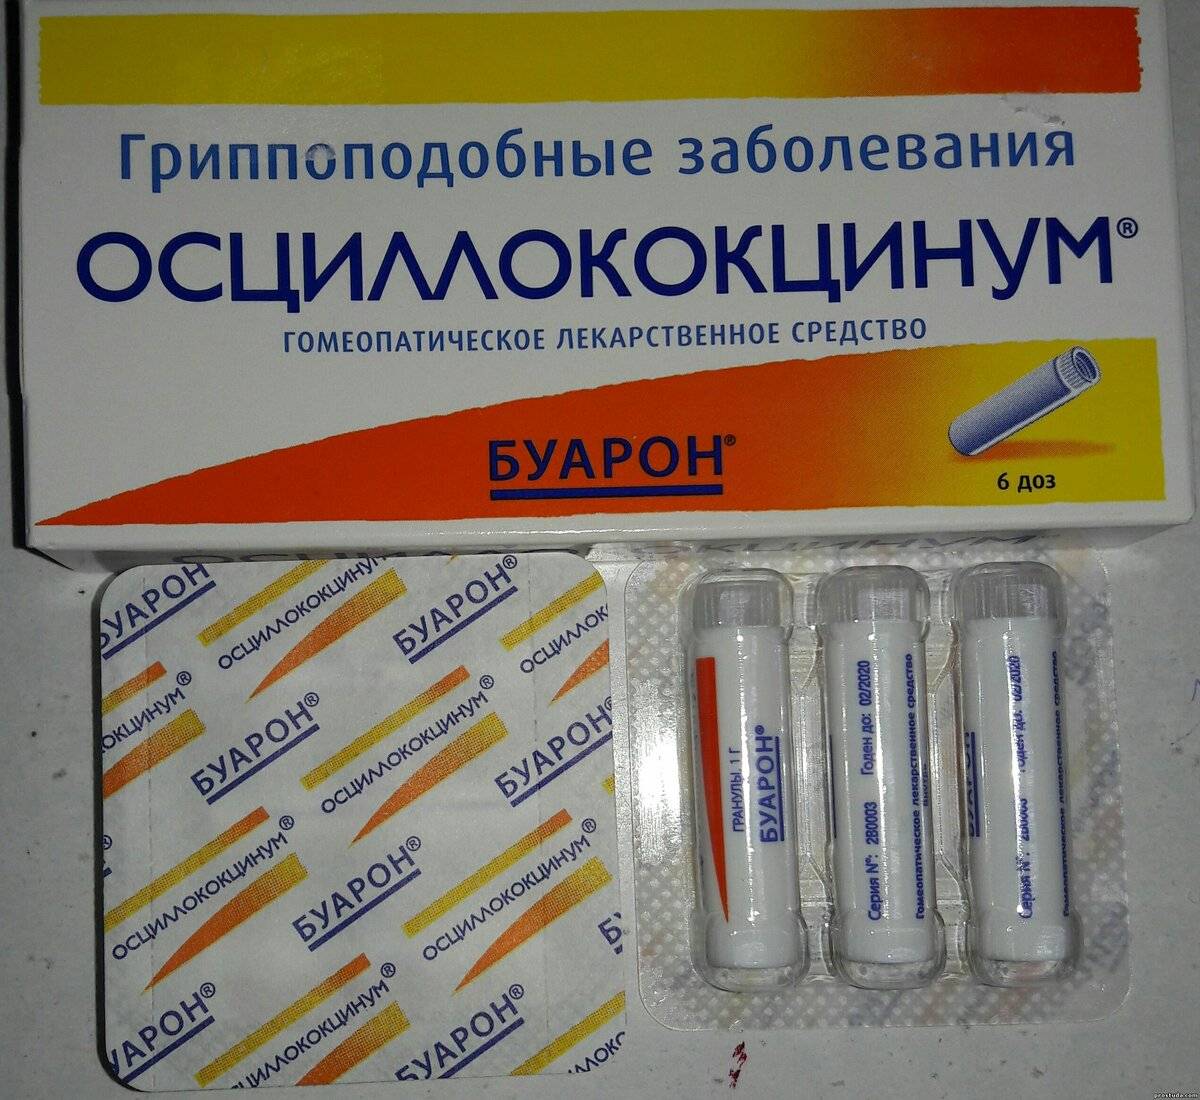 Оциллококцинум Цена Иркутск